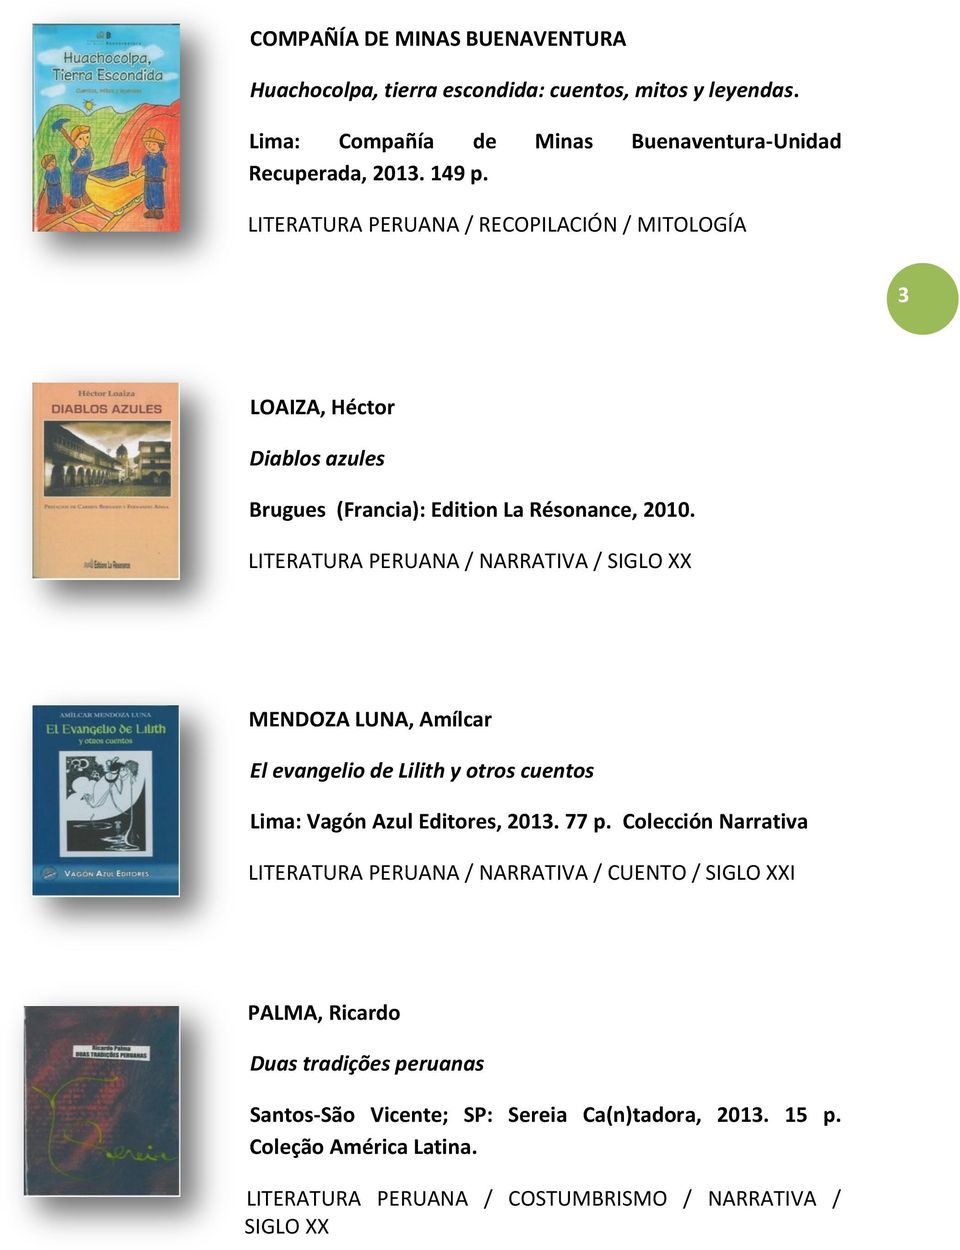 LITERATURA PERUANA / NARRATIVA / SIGLO XX MENDOZA LUNA, Amílcar El evangelio de Lilith y otros cuentos Lima: Vagón Azul Editores, 2013. 77 p.